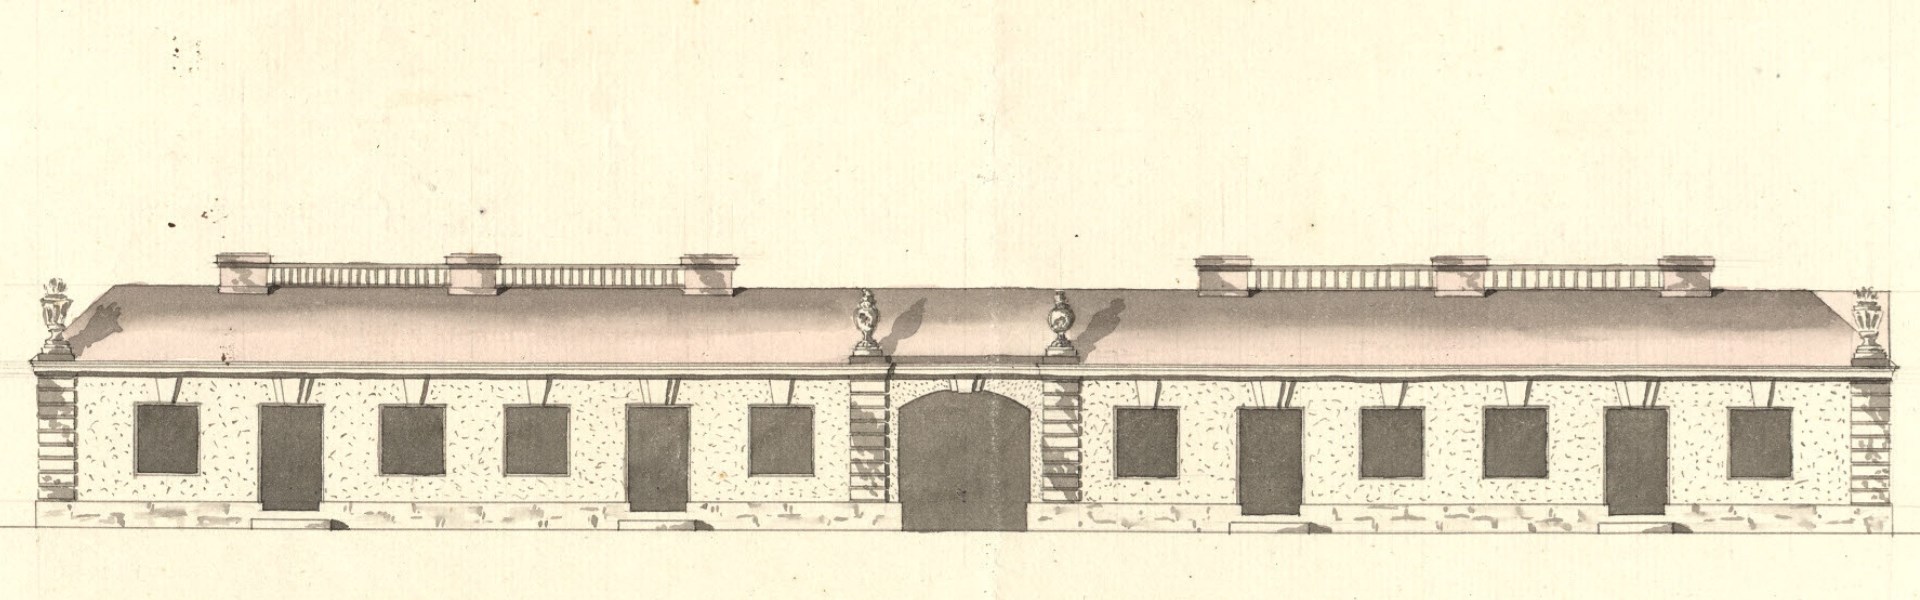 Illustration som visar en byggnad på 1700-talet.